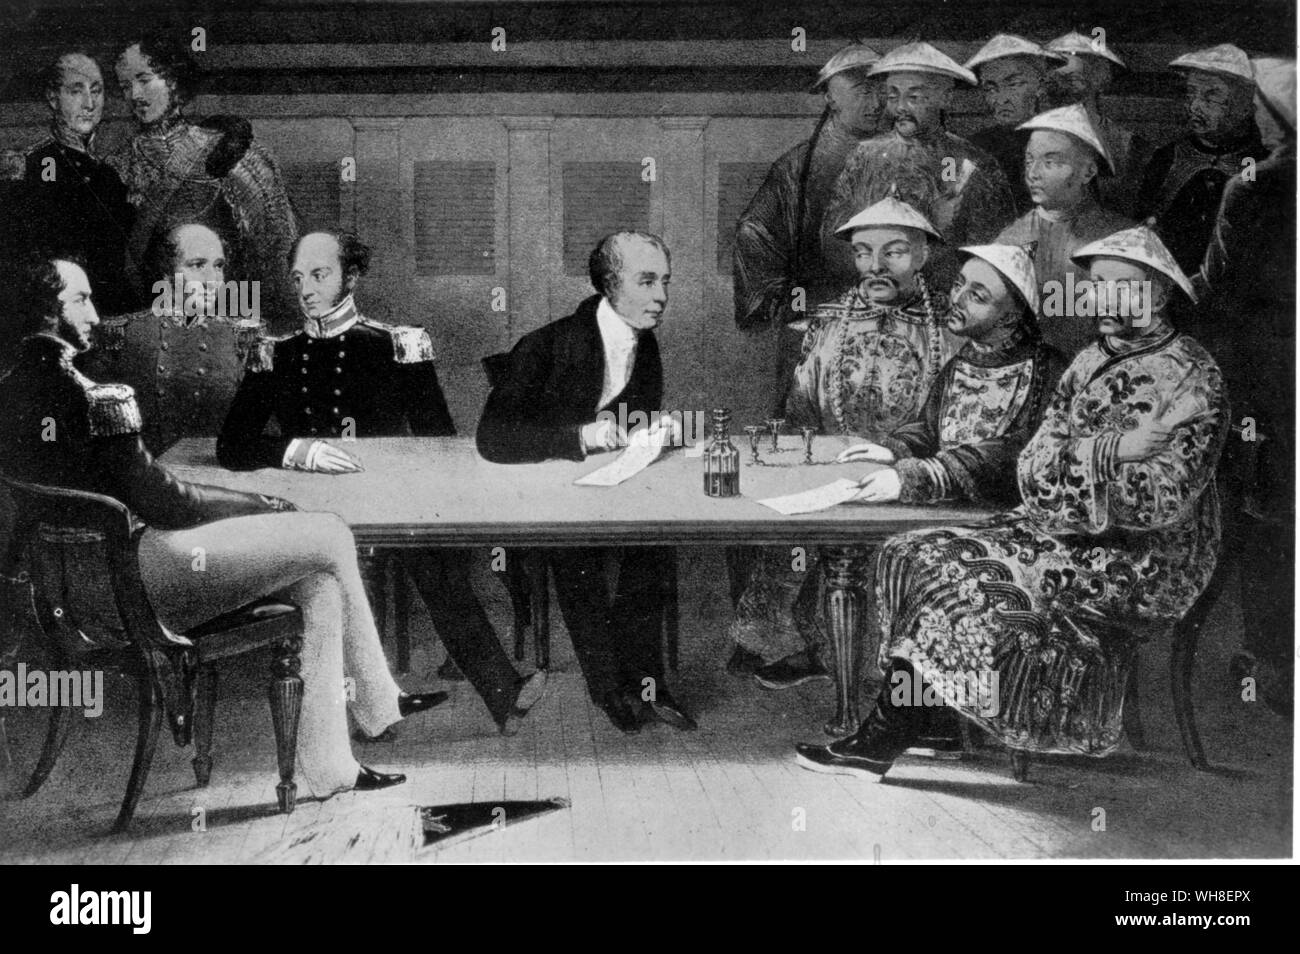 Chusan Konferenz 1840 Vom Chater Sammlung. Chusan wurde durch die Japaner während der Ming-dynastie besetzt und wurde von der britischen Streitkräfte in den Jahren 1840 und 1841 getroffen, und behielt bis 1846. Stockfoto